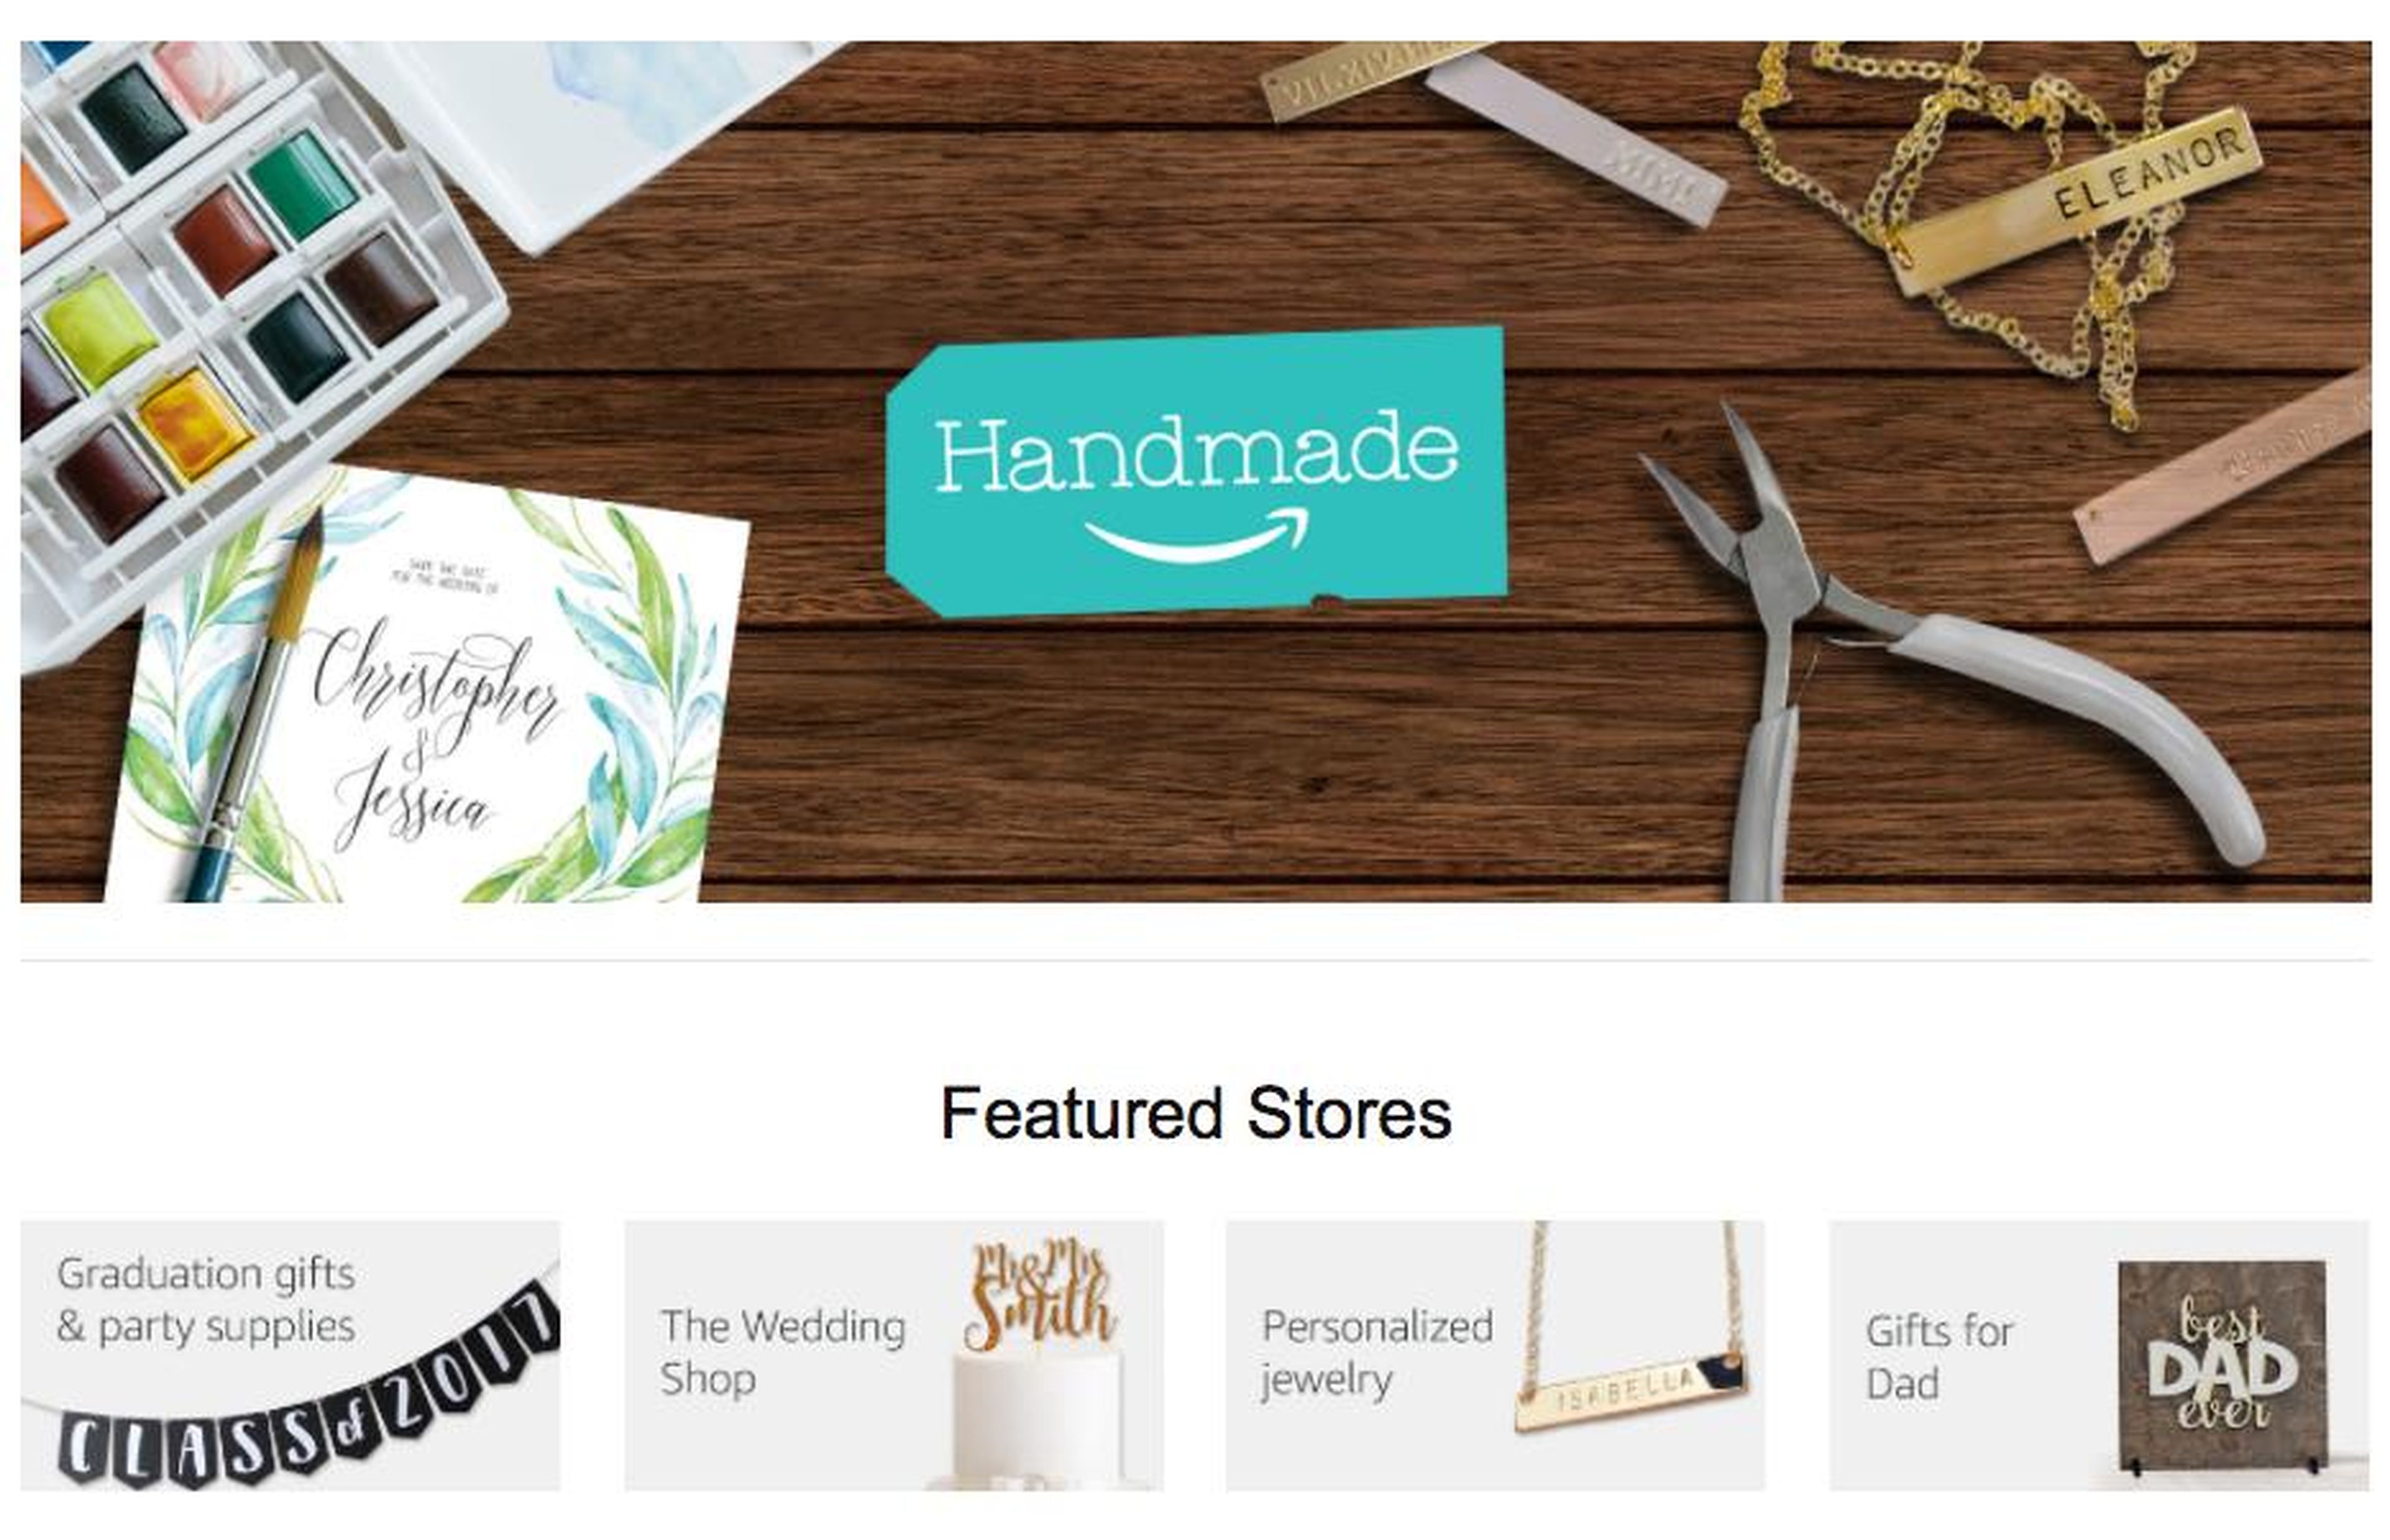 3. En 2015, Amazon lanzó un competidor de Etsy llamado Handmade para ayudar a la gente a encontrar productos hechos a mano por artesanos.